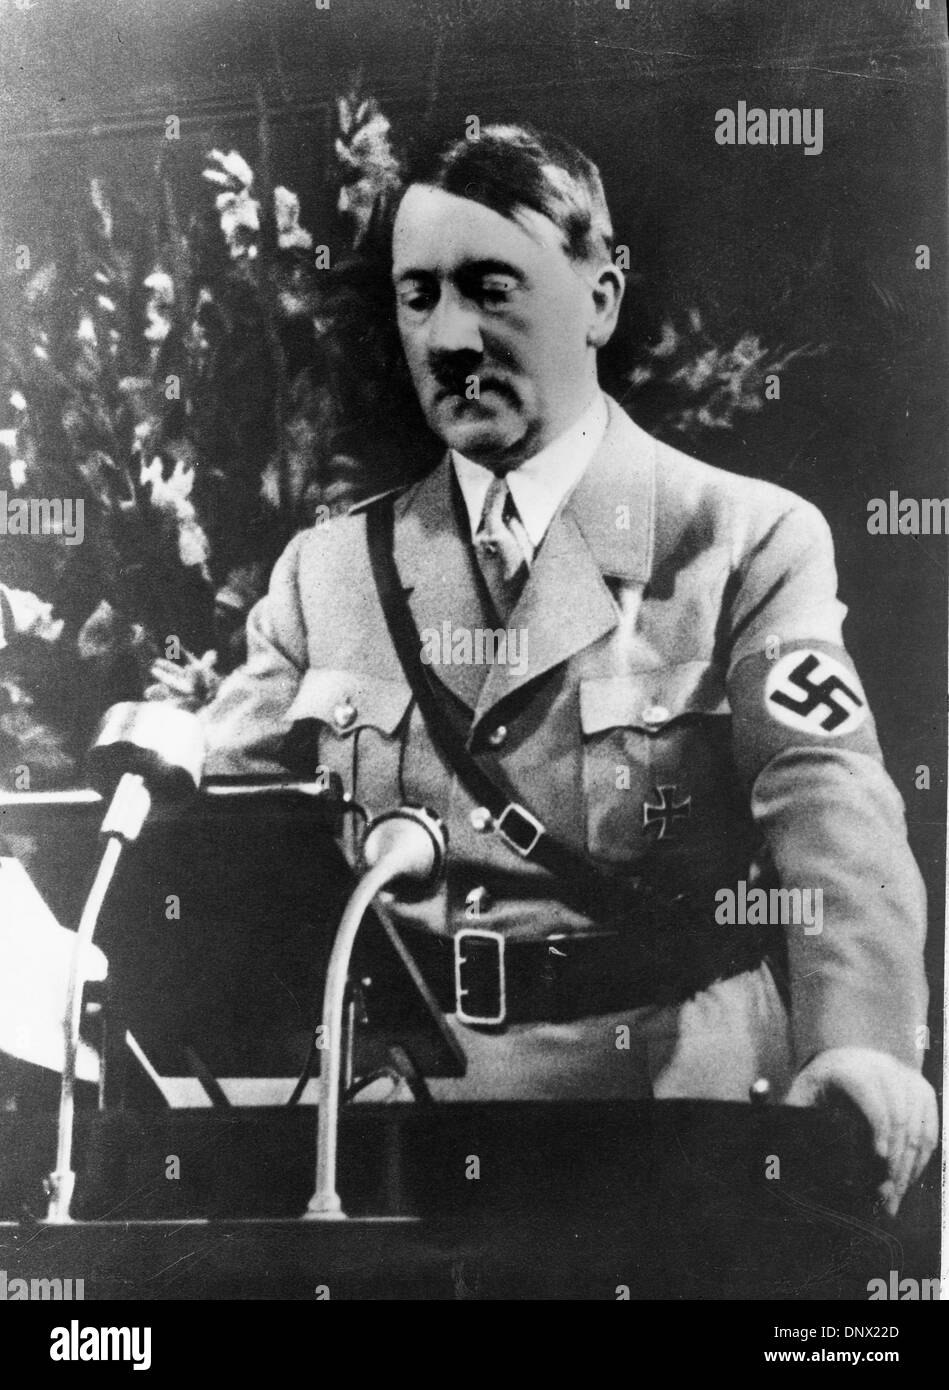 Ottobre 24, 1939 - Berlino, Germania - ADOLF HITLER (20 Aprile 1889ÐApril 30, 1945) è stato il Führer und Reichskanzler (Leader e il cancelliere imperiale) della Repubblica federale di Germania dal 1933 fino alla sua morte. Egli era il leader della nazionale socialista tedesco Partito dei Lavoratori (NSDAP), meglio conosciuto come il partito nazista. I criteri razziali che Hitler diretto è culminato in un enorme numero di decessi comunemente citate a ov Foto Stock